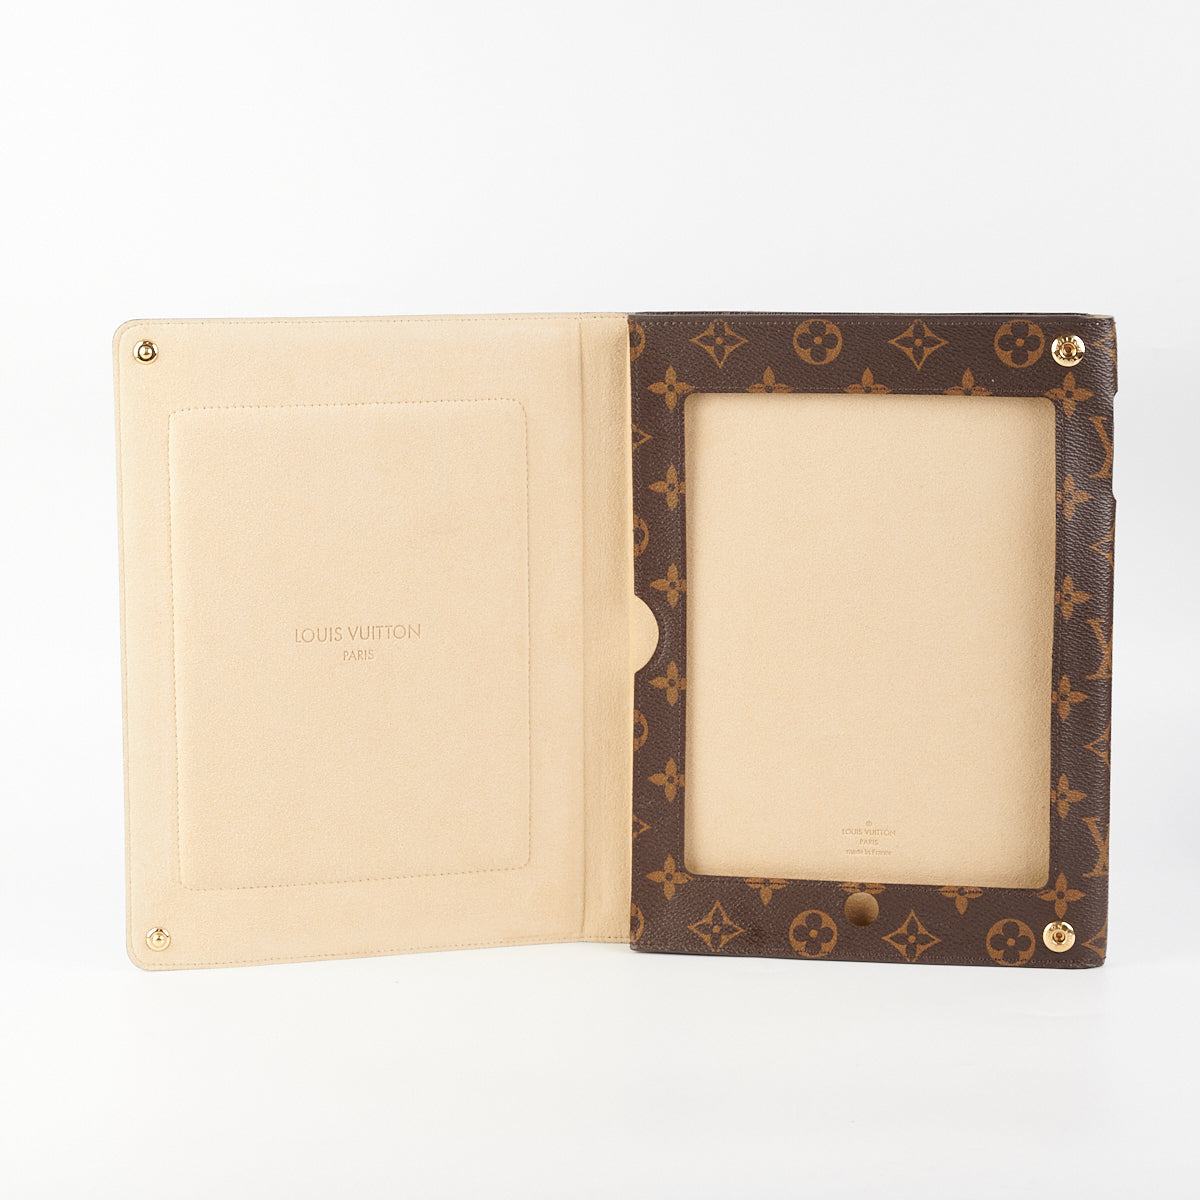 Louis Vuitton iPad mini case - Luxury Helsinki